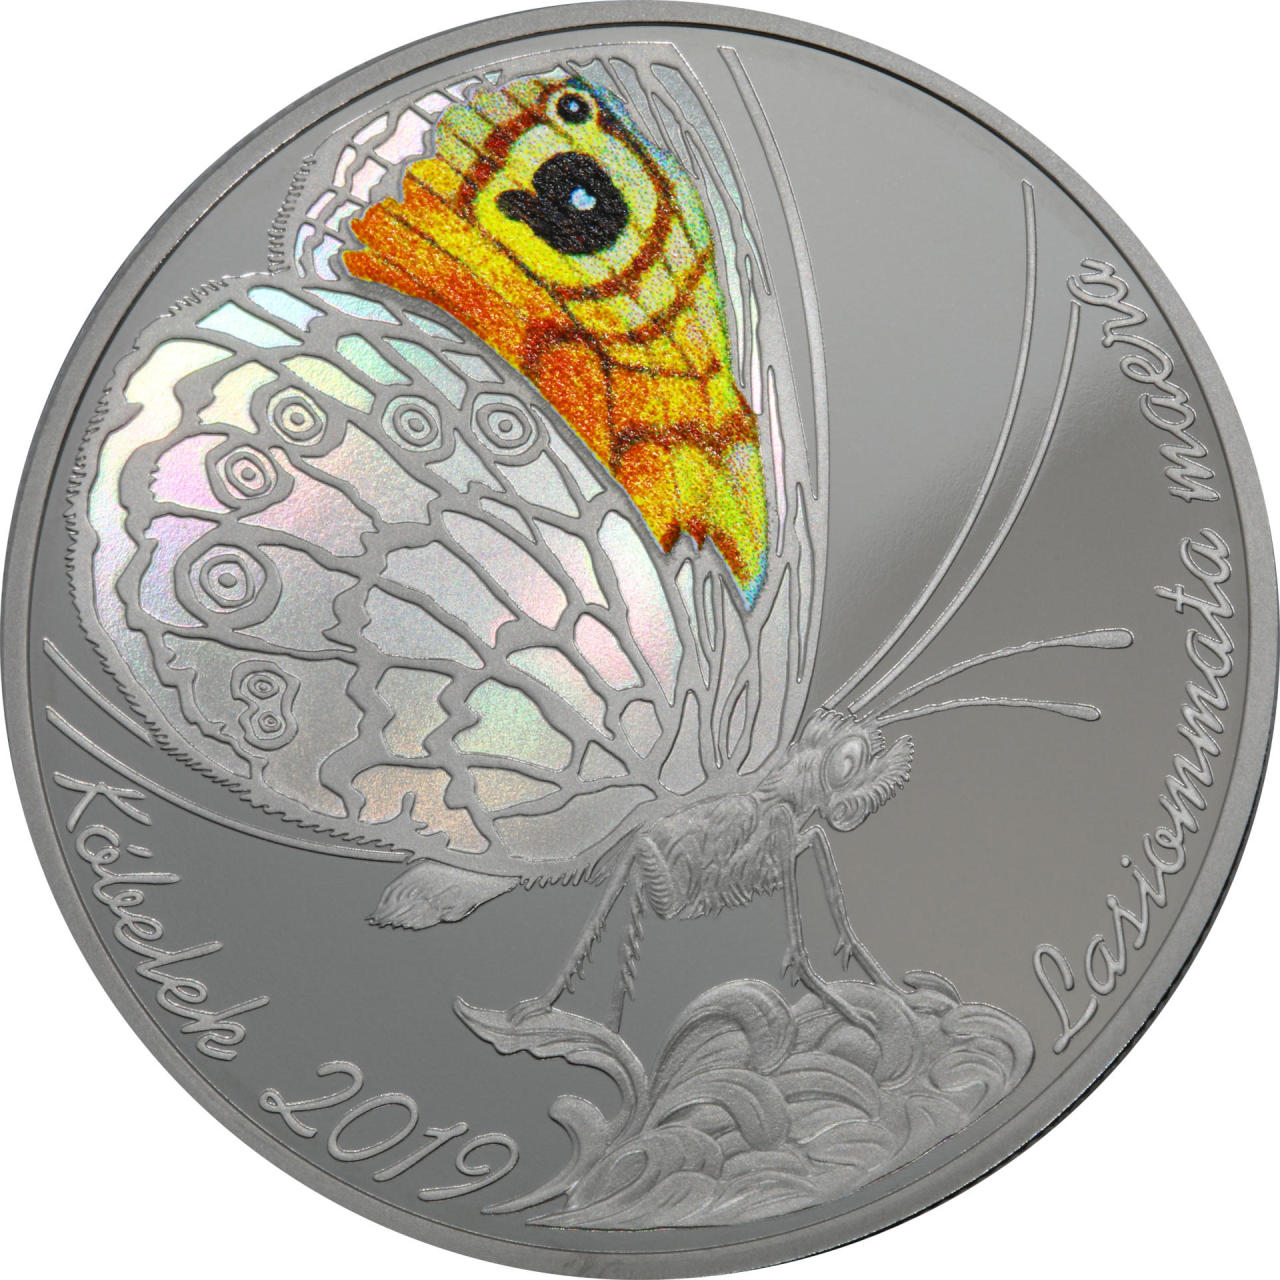 Нацбанк Казахстана выпустил коллекционные монеты с изображением бабочки